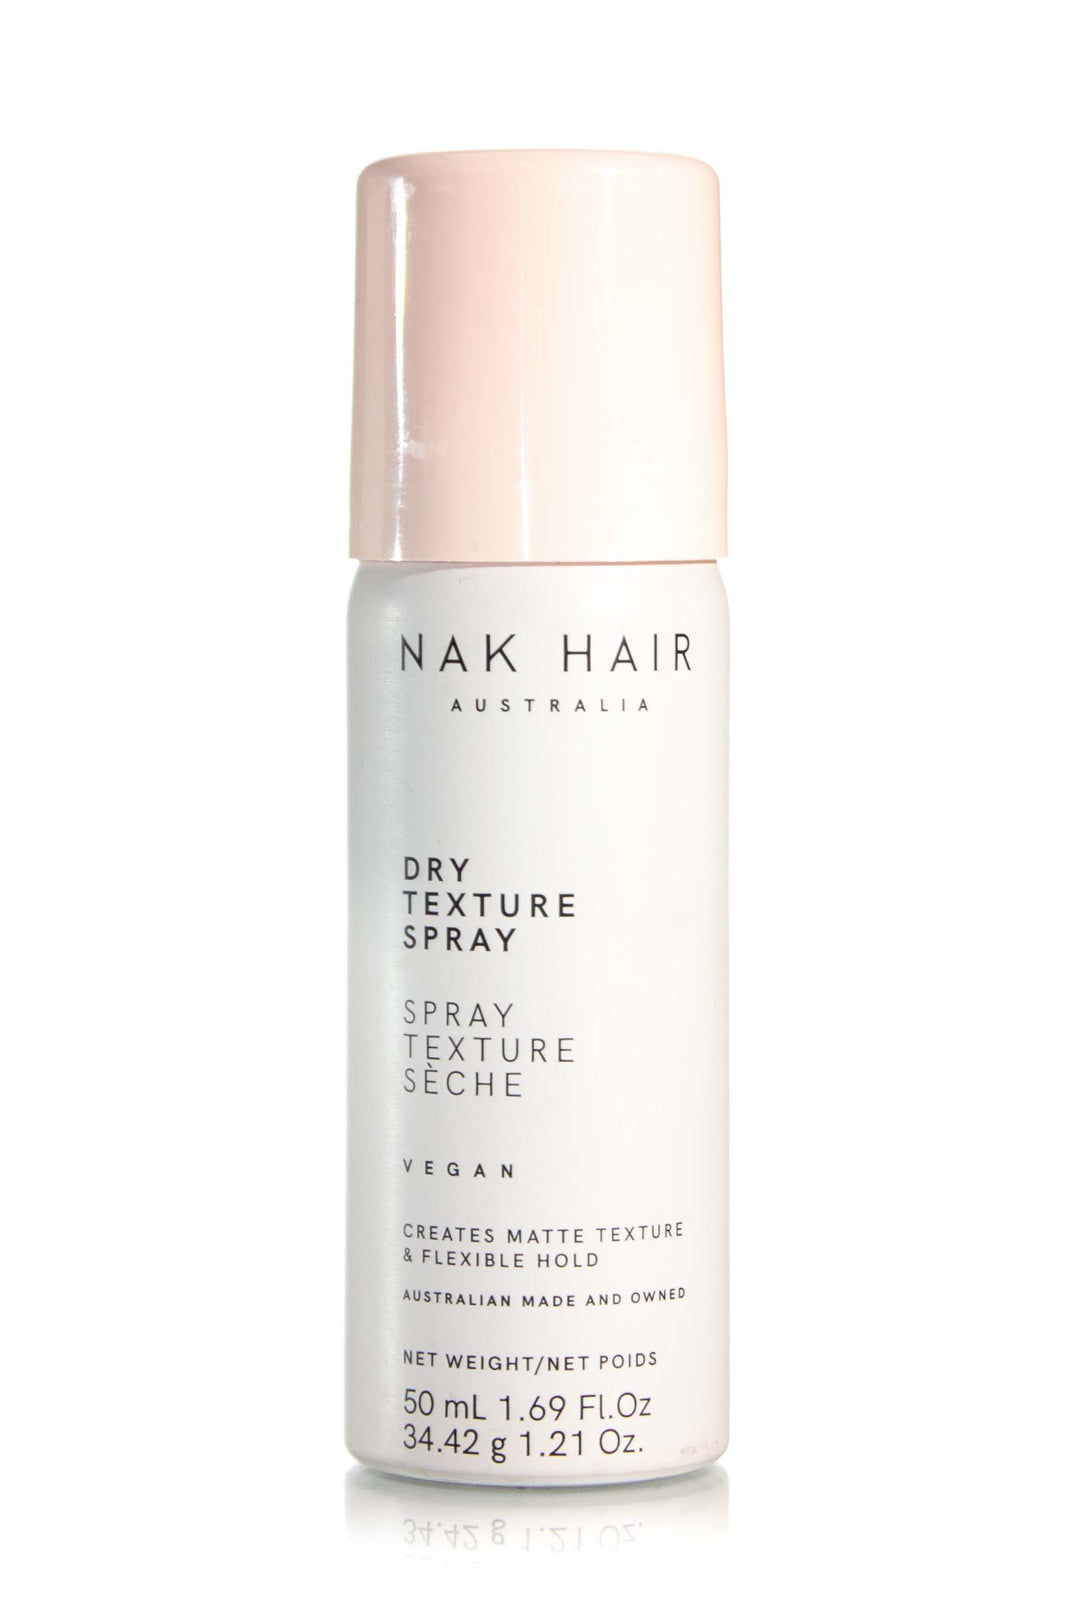 NAK HAIR Dry Texture Spray